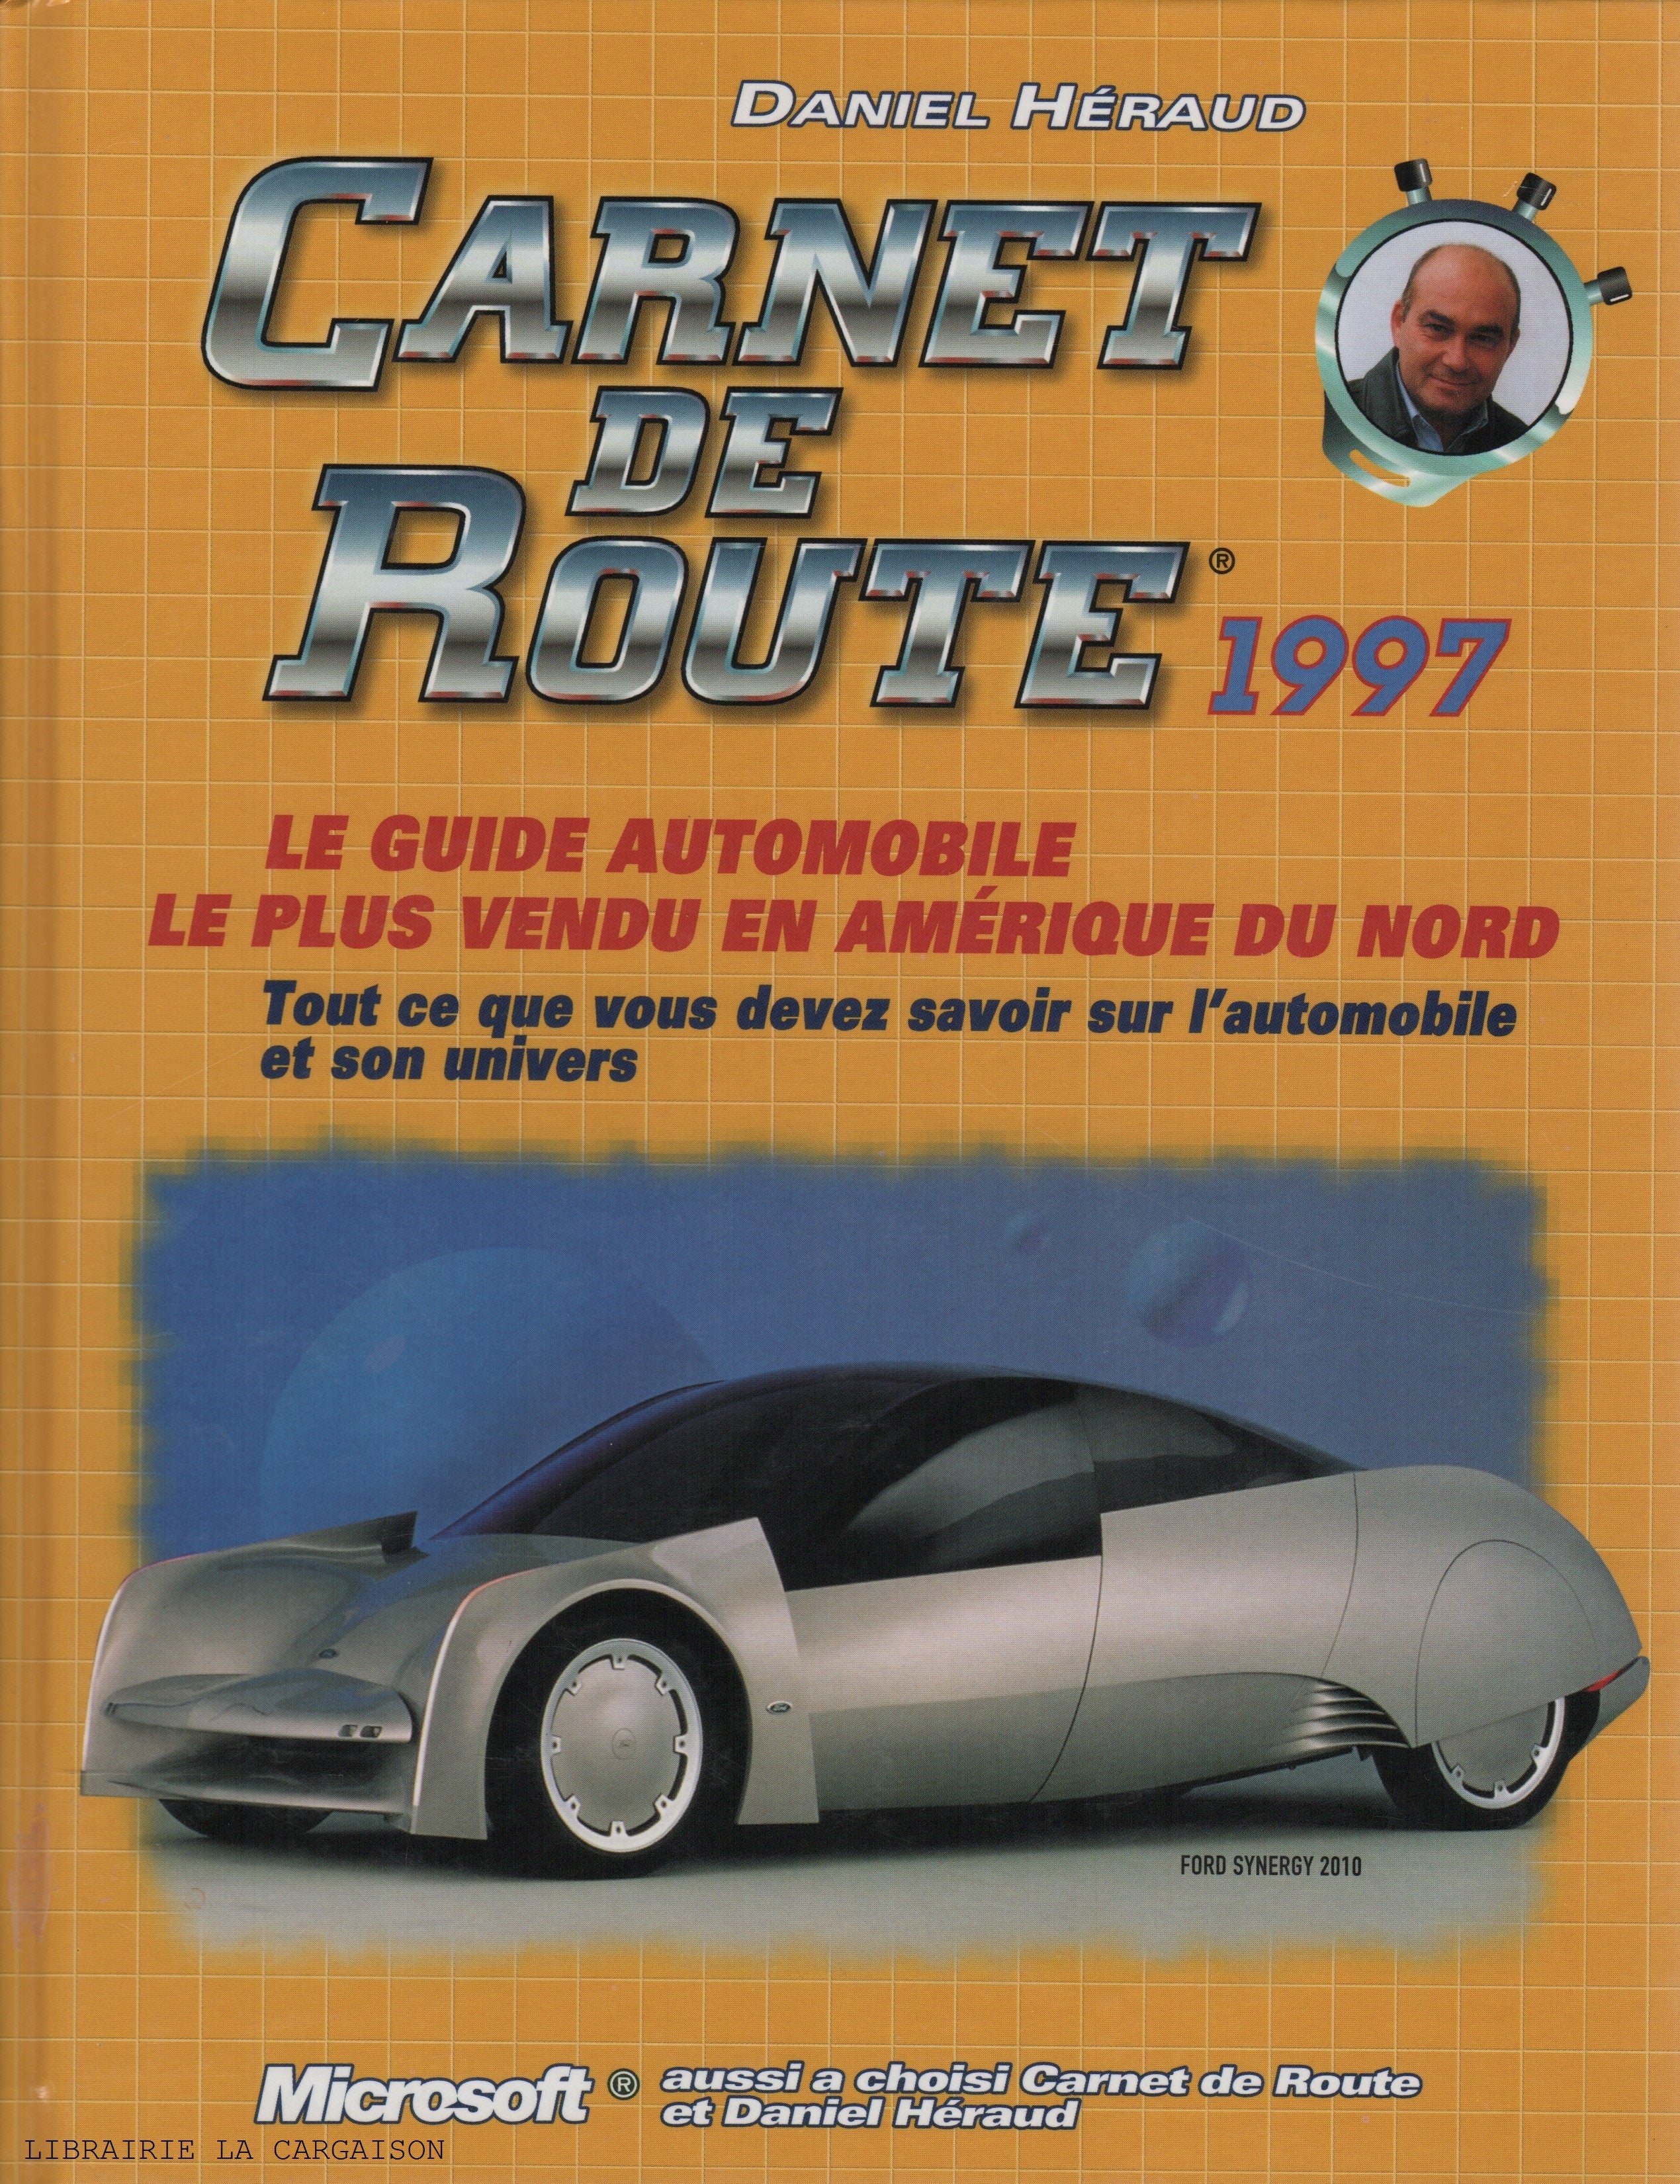 CARNET DE ROUTE. Carnet de Route 1997